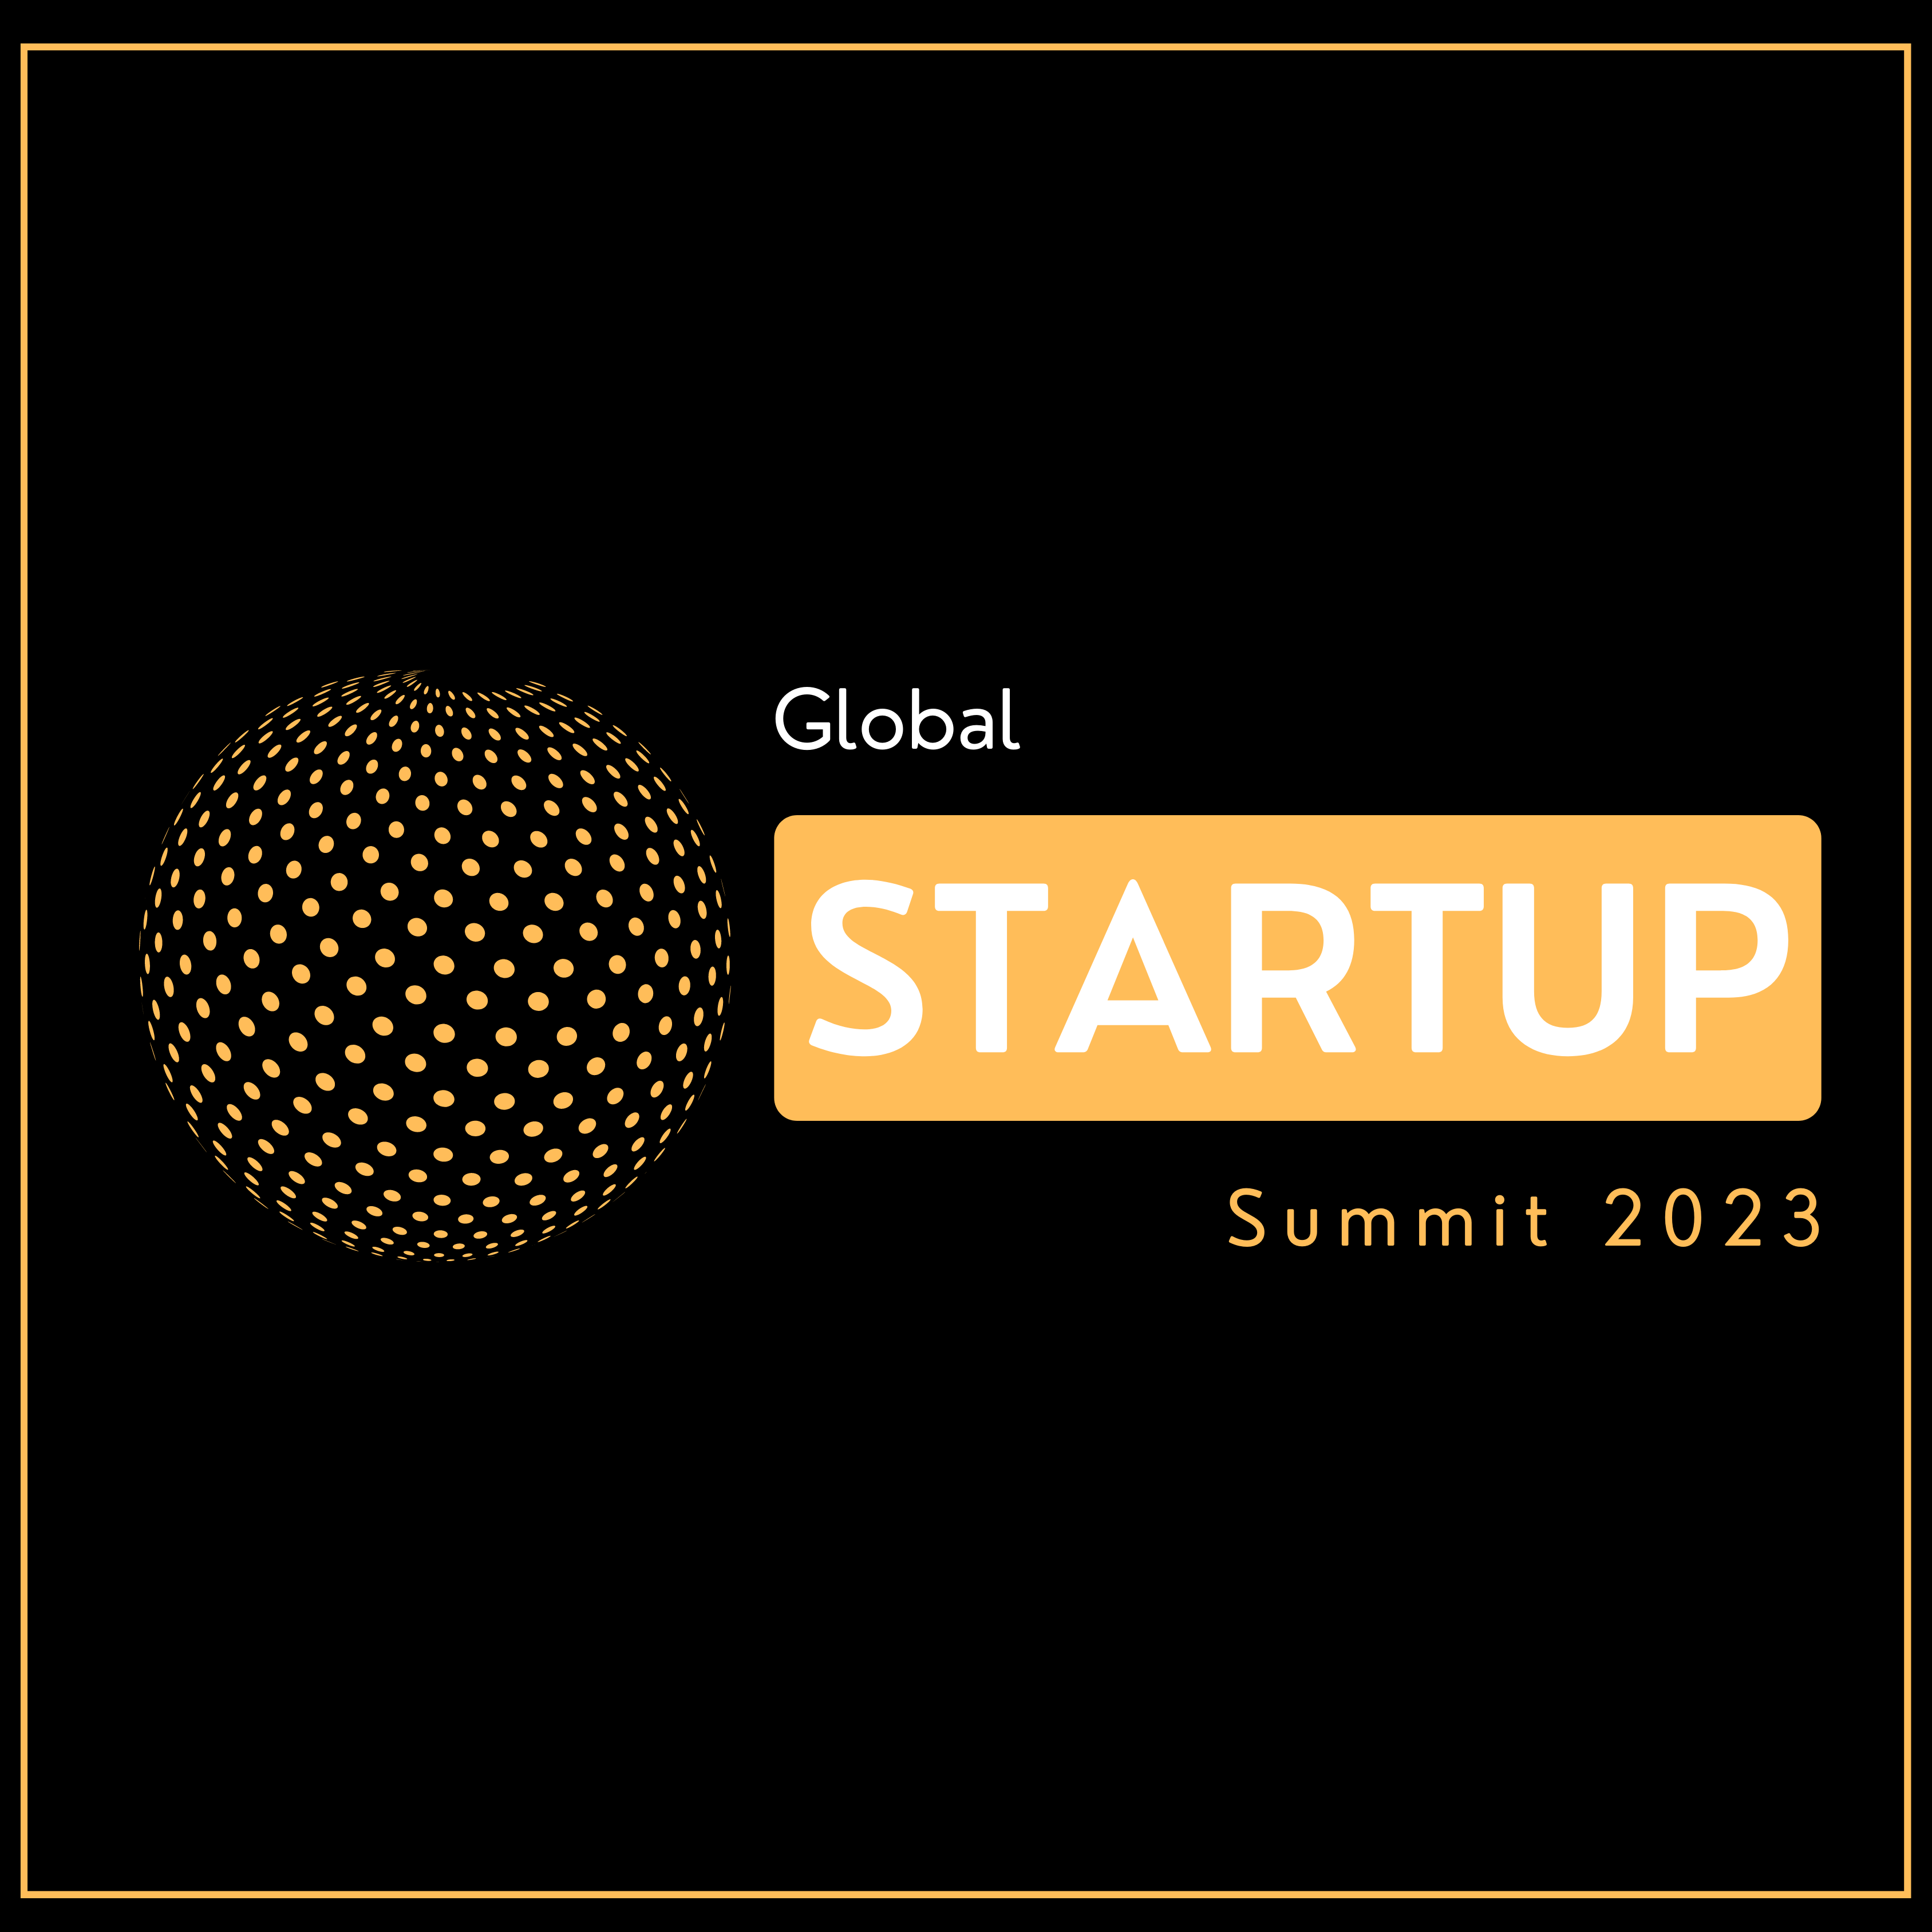 GLOBAL STARTUP SUMMIT 2023 Logo